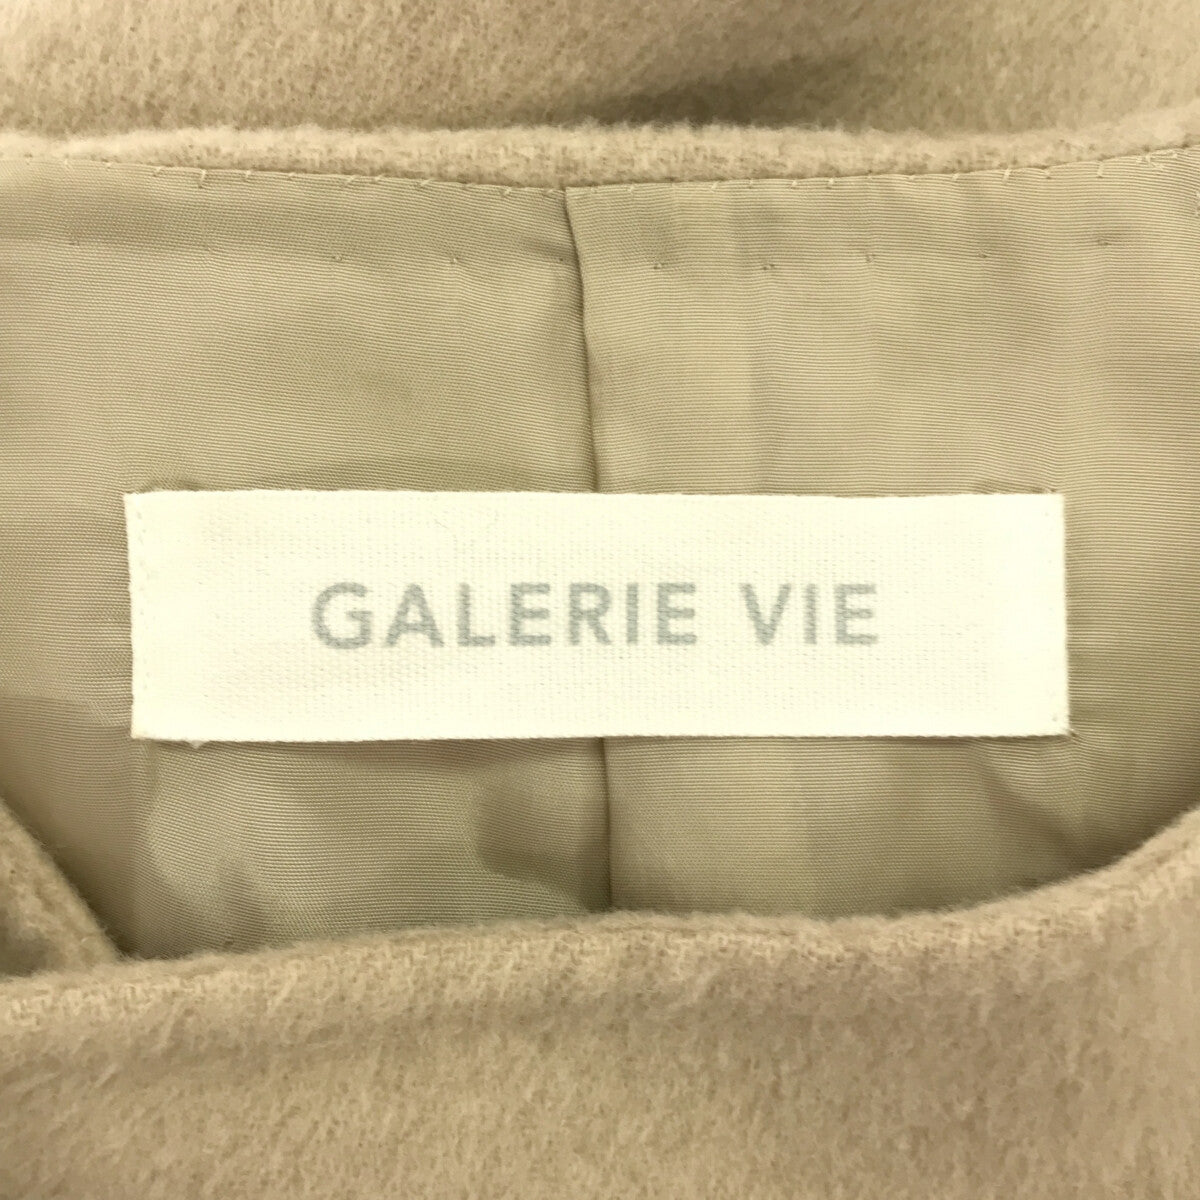 GALERIE VIE / ギャルリーヴィー | ウールダブルフェイス ショートノーカラーコート | 36 | レディース